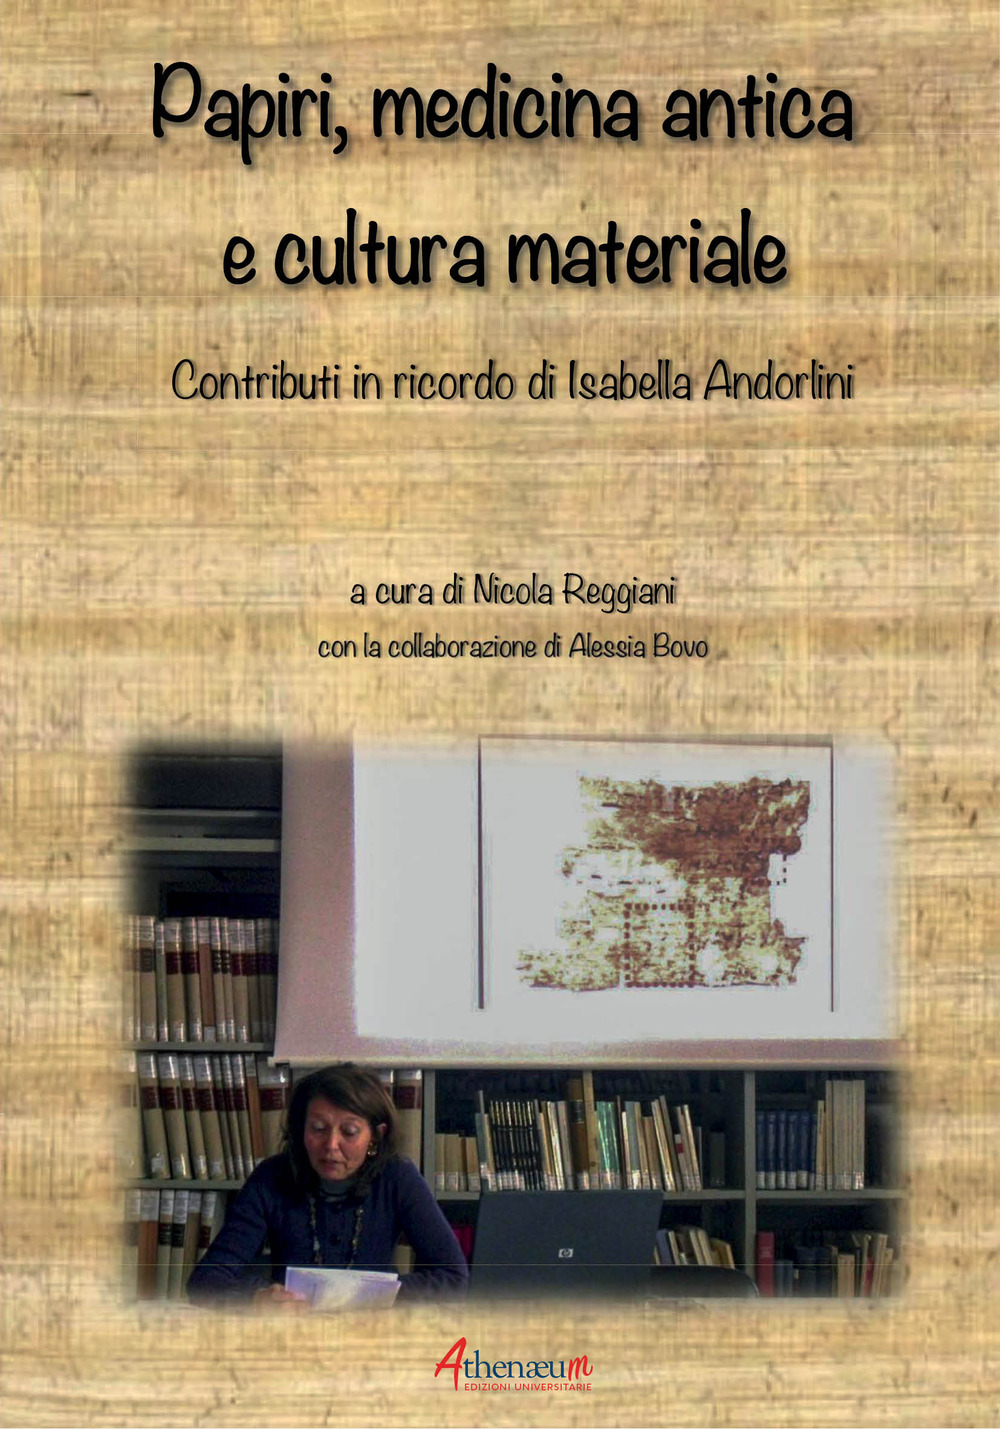 Libri Papiri, Medicina Antica E Cultura Materiale. Contributi In Ricordo Di Isabella Andorlini NUOVO SIGILLATO, EDIZIONE DEL 09/07/2019 SUBITO DISPONIBILE